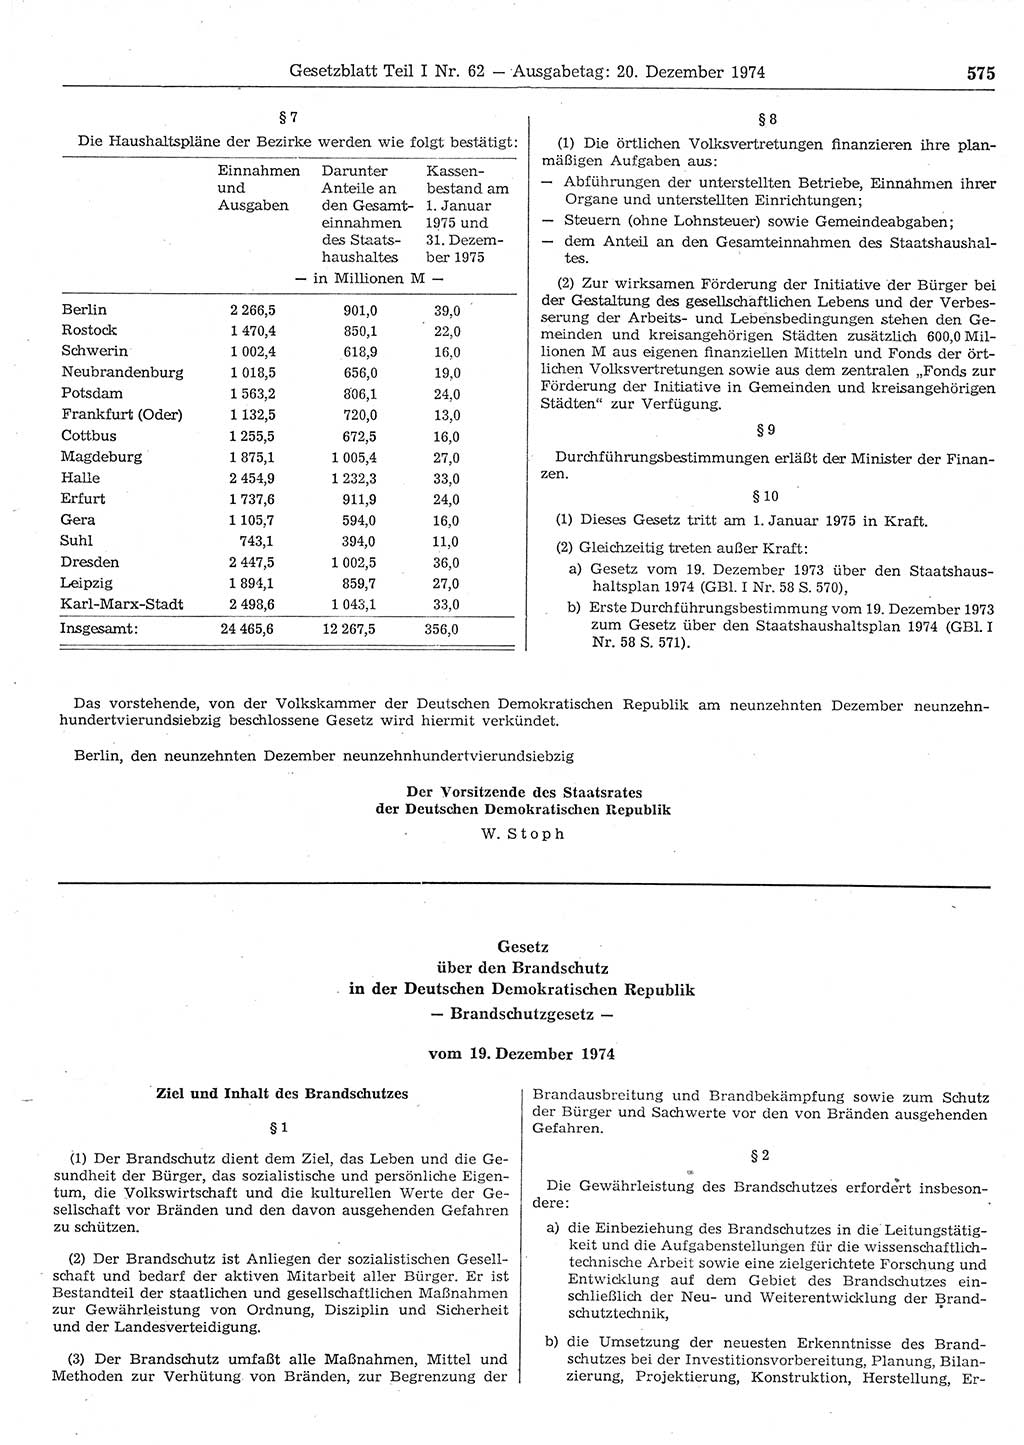 Gesetzblatt (GBl.) der Deutschen Demokratischen Republik (DDR) Teil Ⅰ 1974, Seite 575 (GBl. DDR Ⅰ 1974, S. 575)